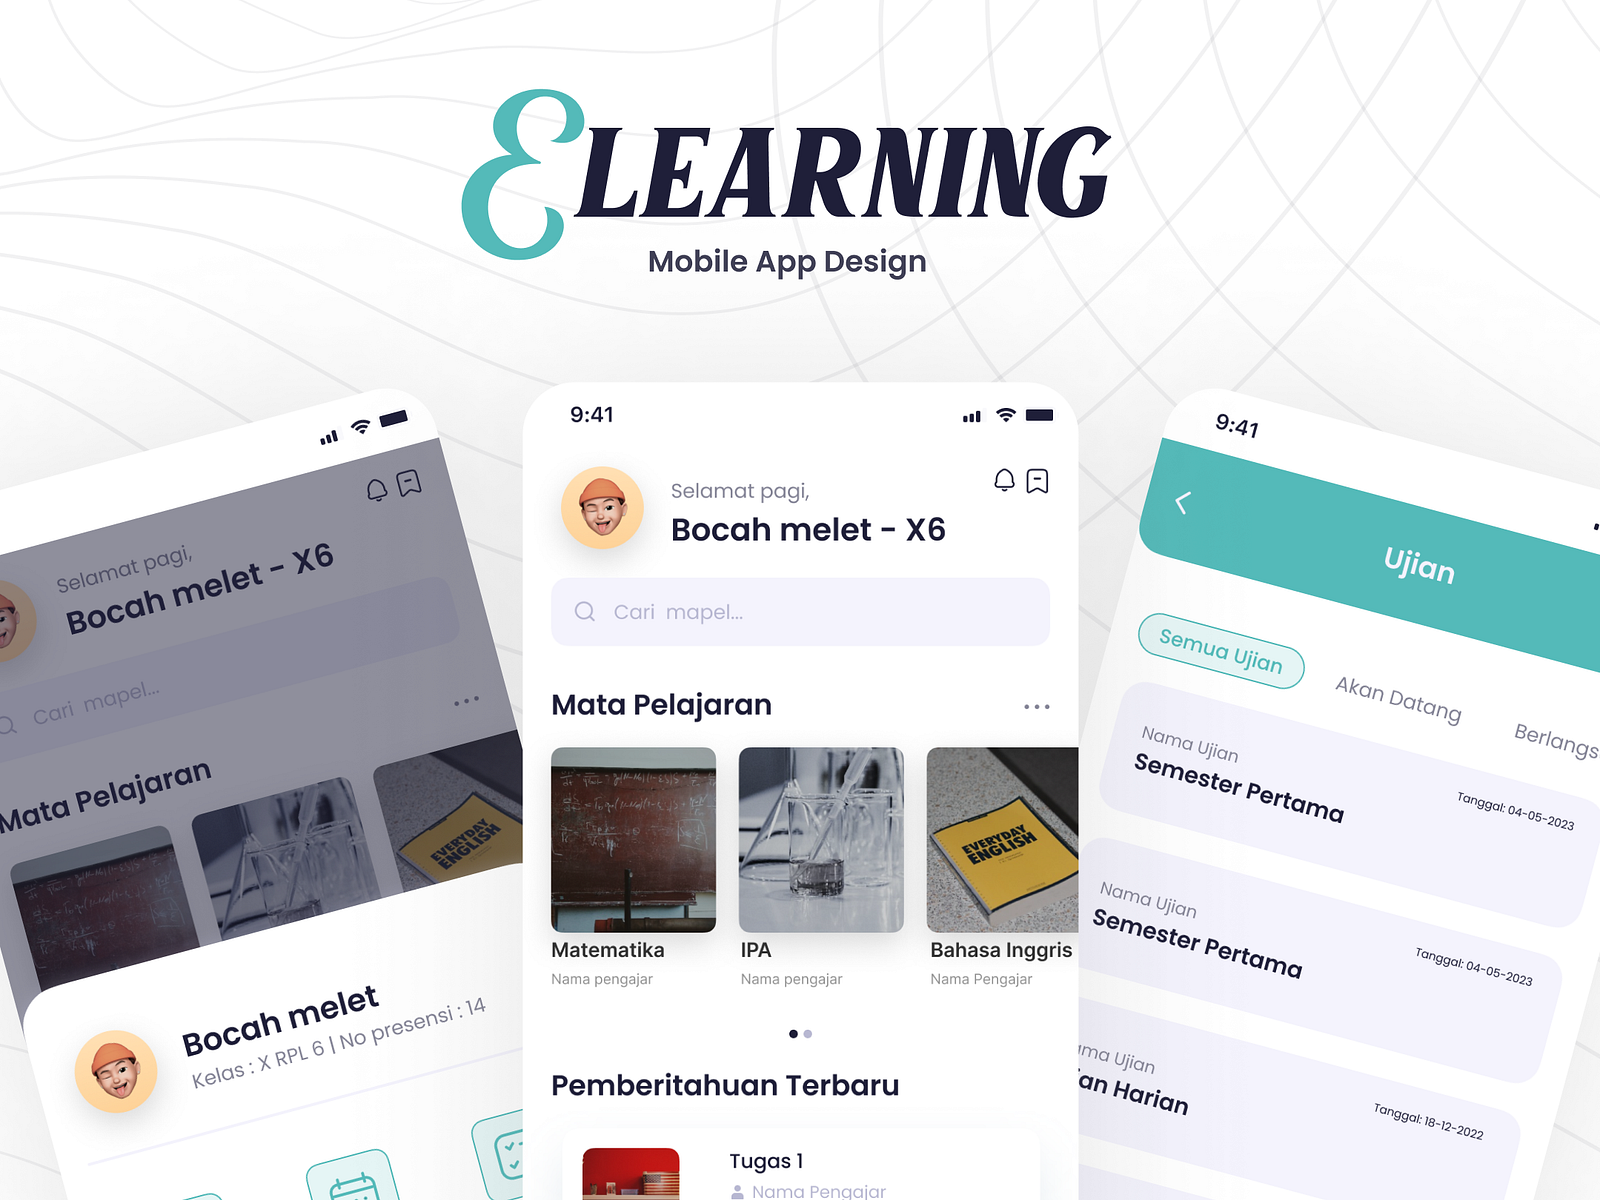 Mobile App Design - E learning by Juang Bagus Arya Mukti on Dribbble